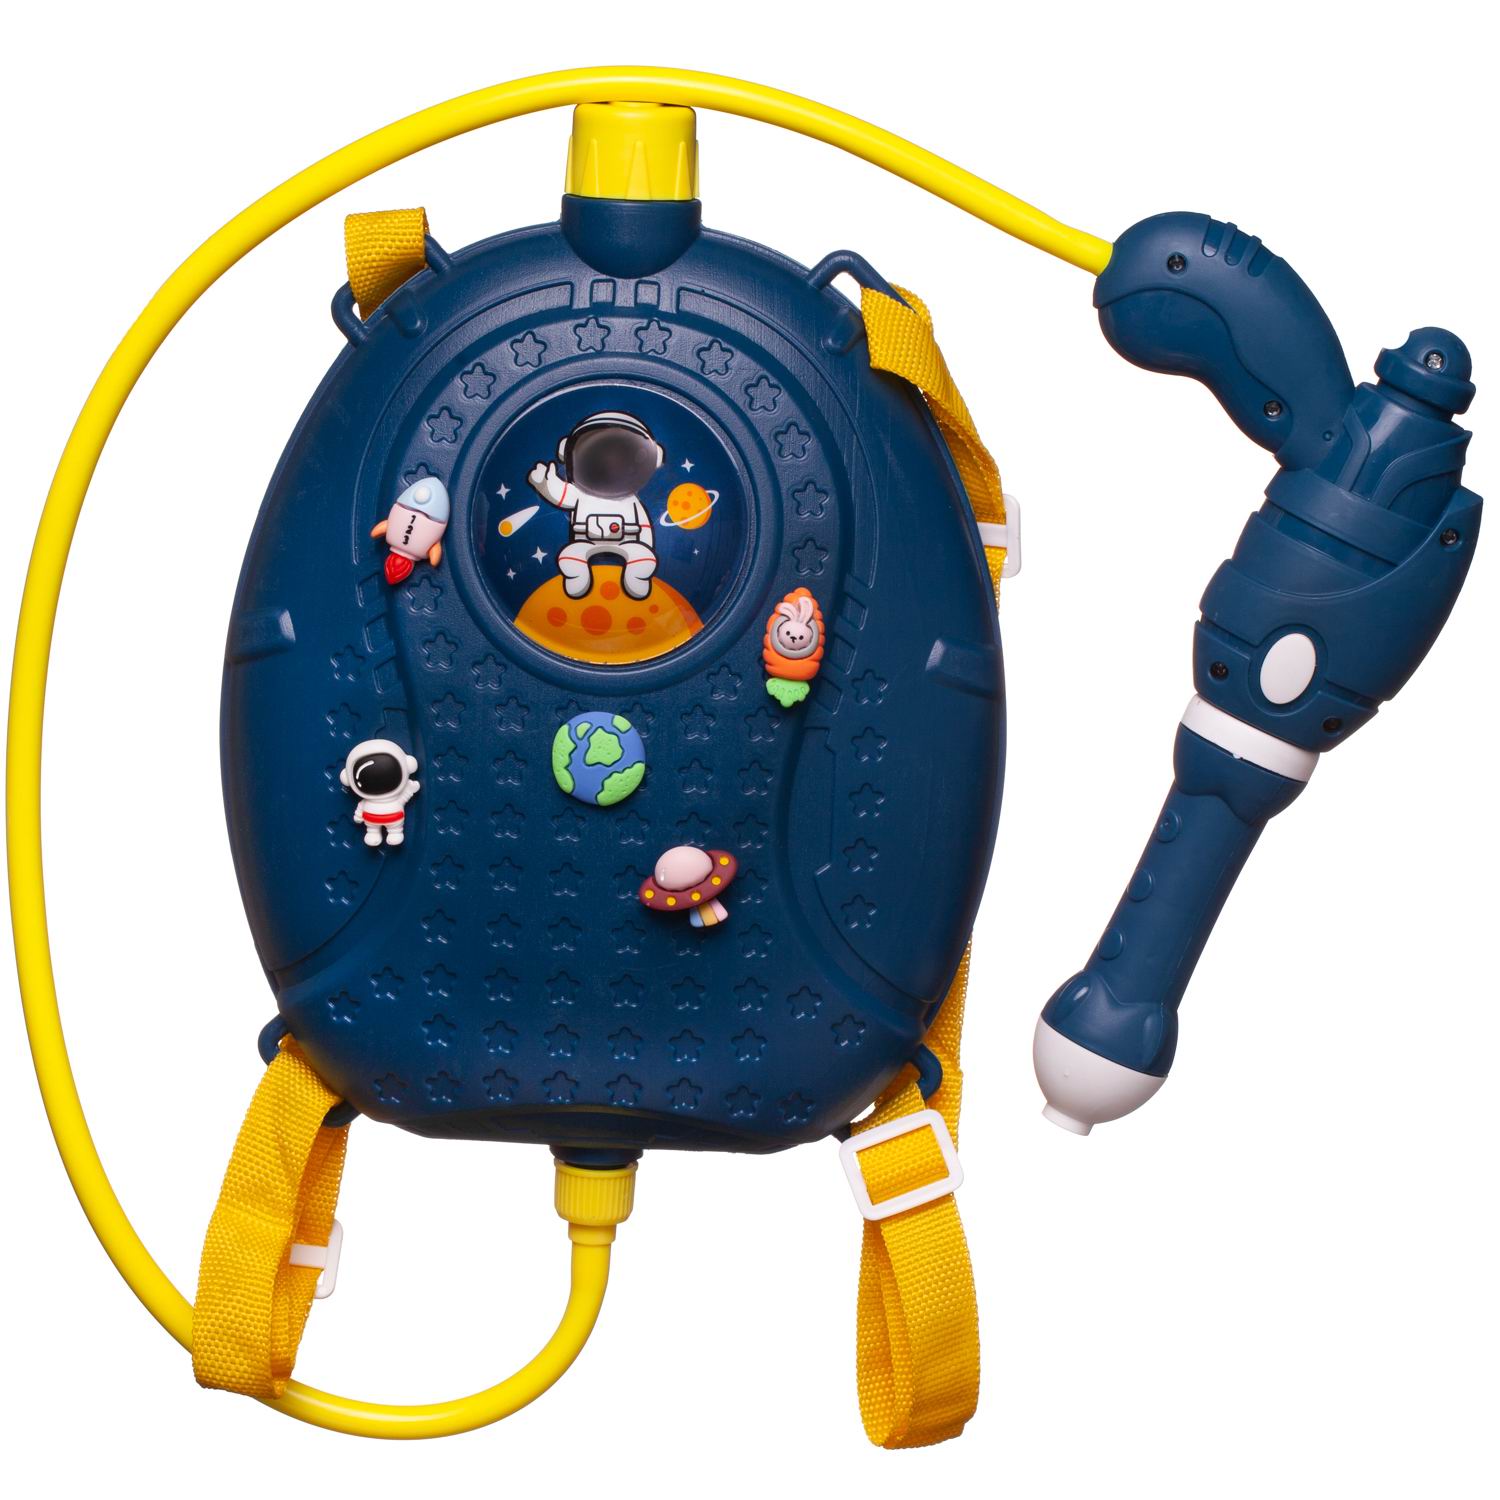 Бластер игрушечный Junfa водный с рюкзачком-резервуаром Покорители космоса, объем 1500 мл